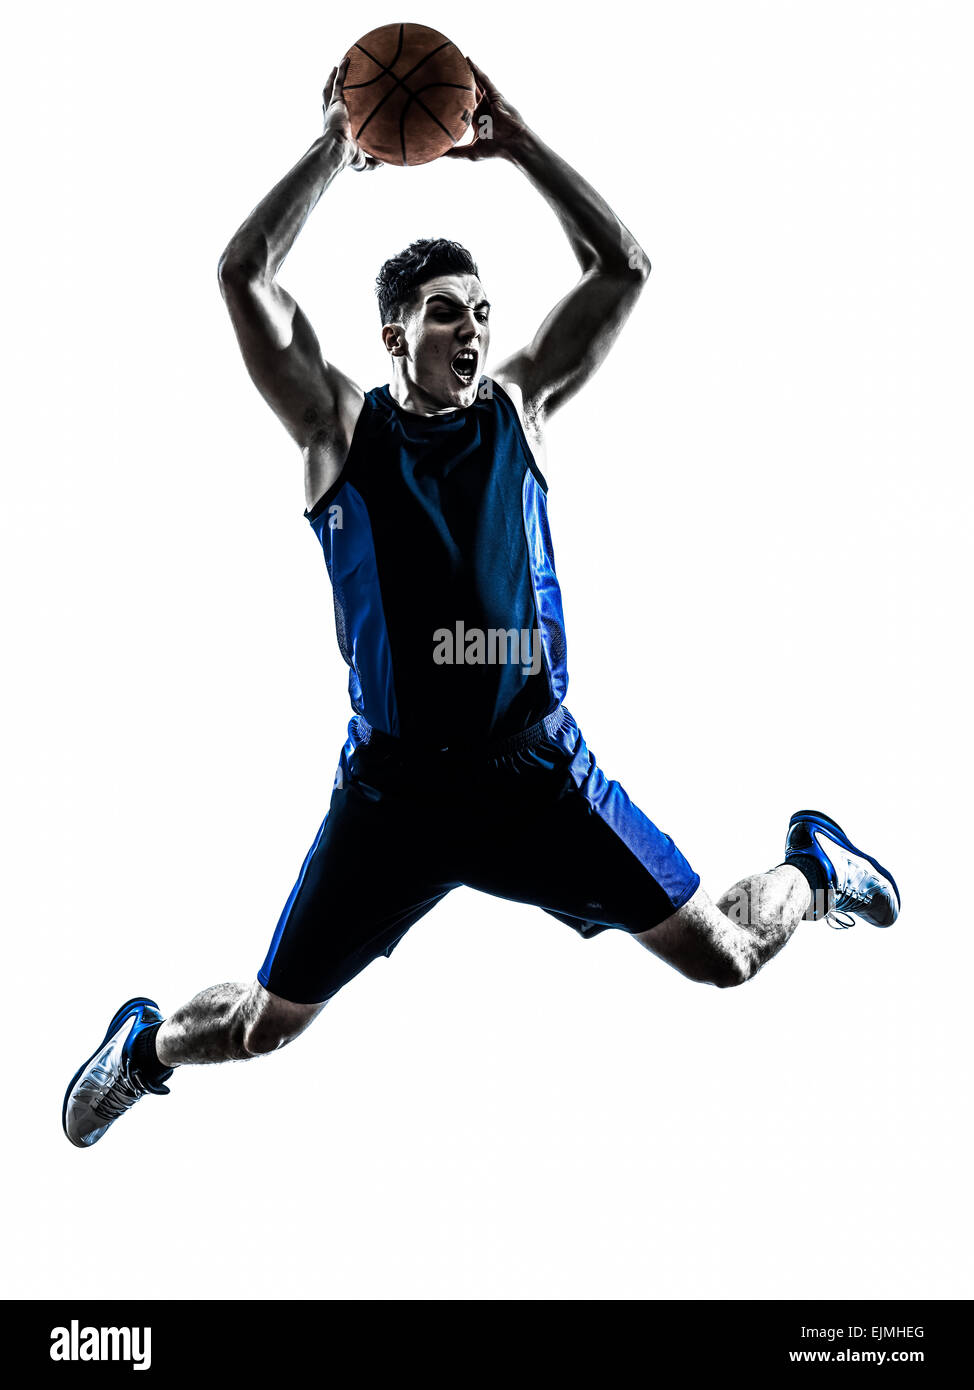 Un joueur de basket-ball homme dunk saut en silhouette isolé sur fond blanc Banque D'Images